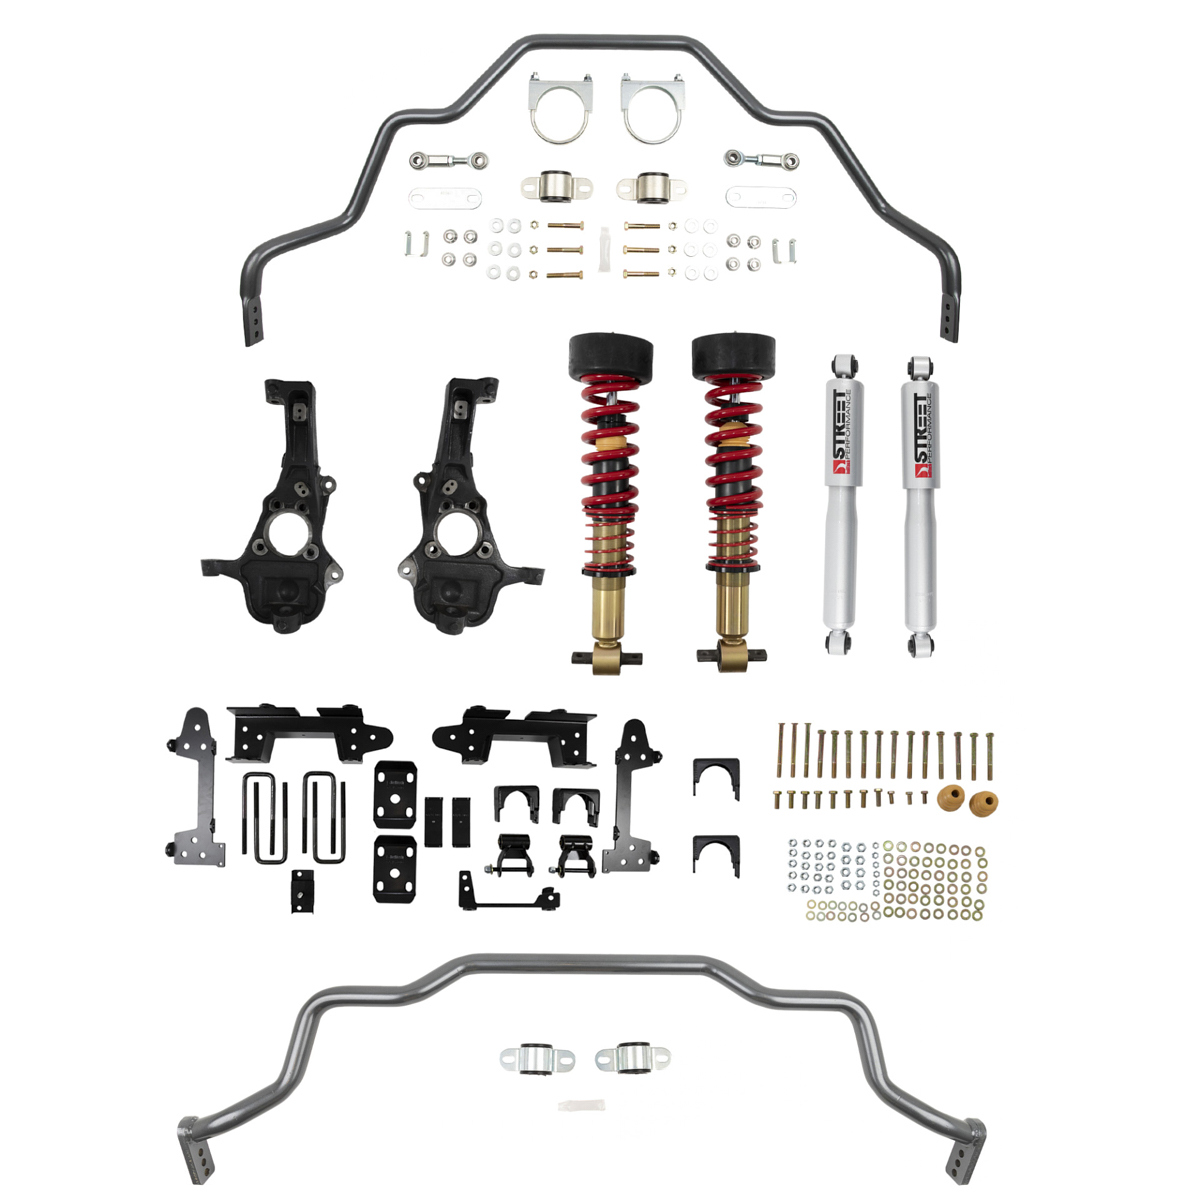 Bell Tech 1041HK Suspension Handling Kit, Performance Handling Kit, Brackets / Coil-Over System / Hardware / Shocks / Sway Bar, GM Fullsize Truck 2019-21, Kit